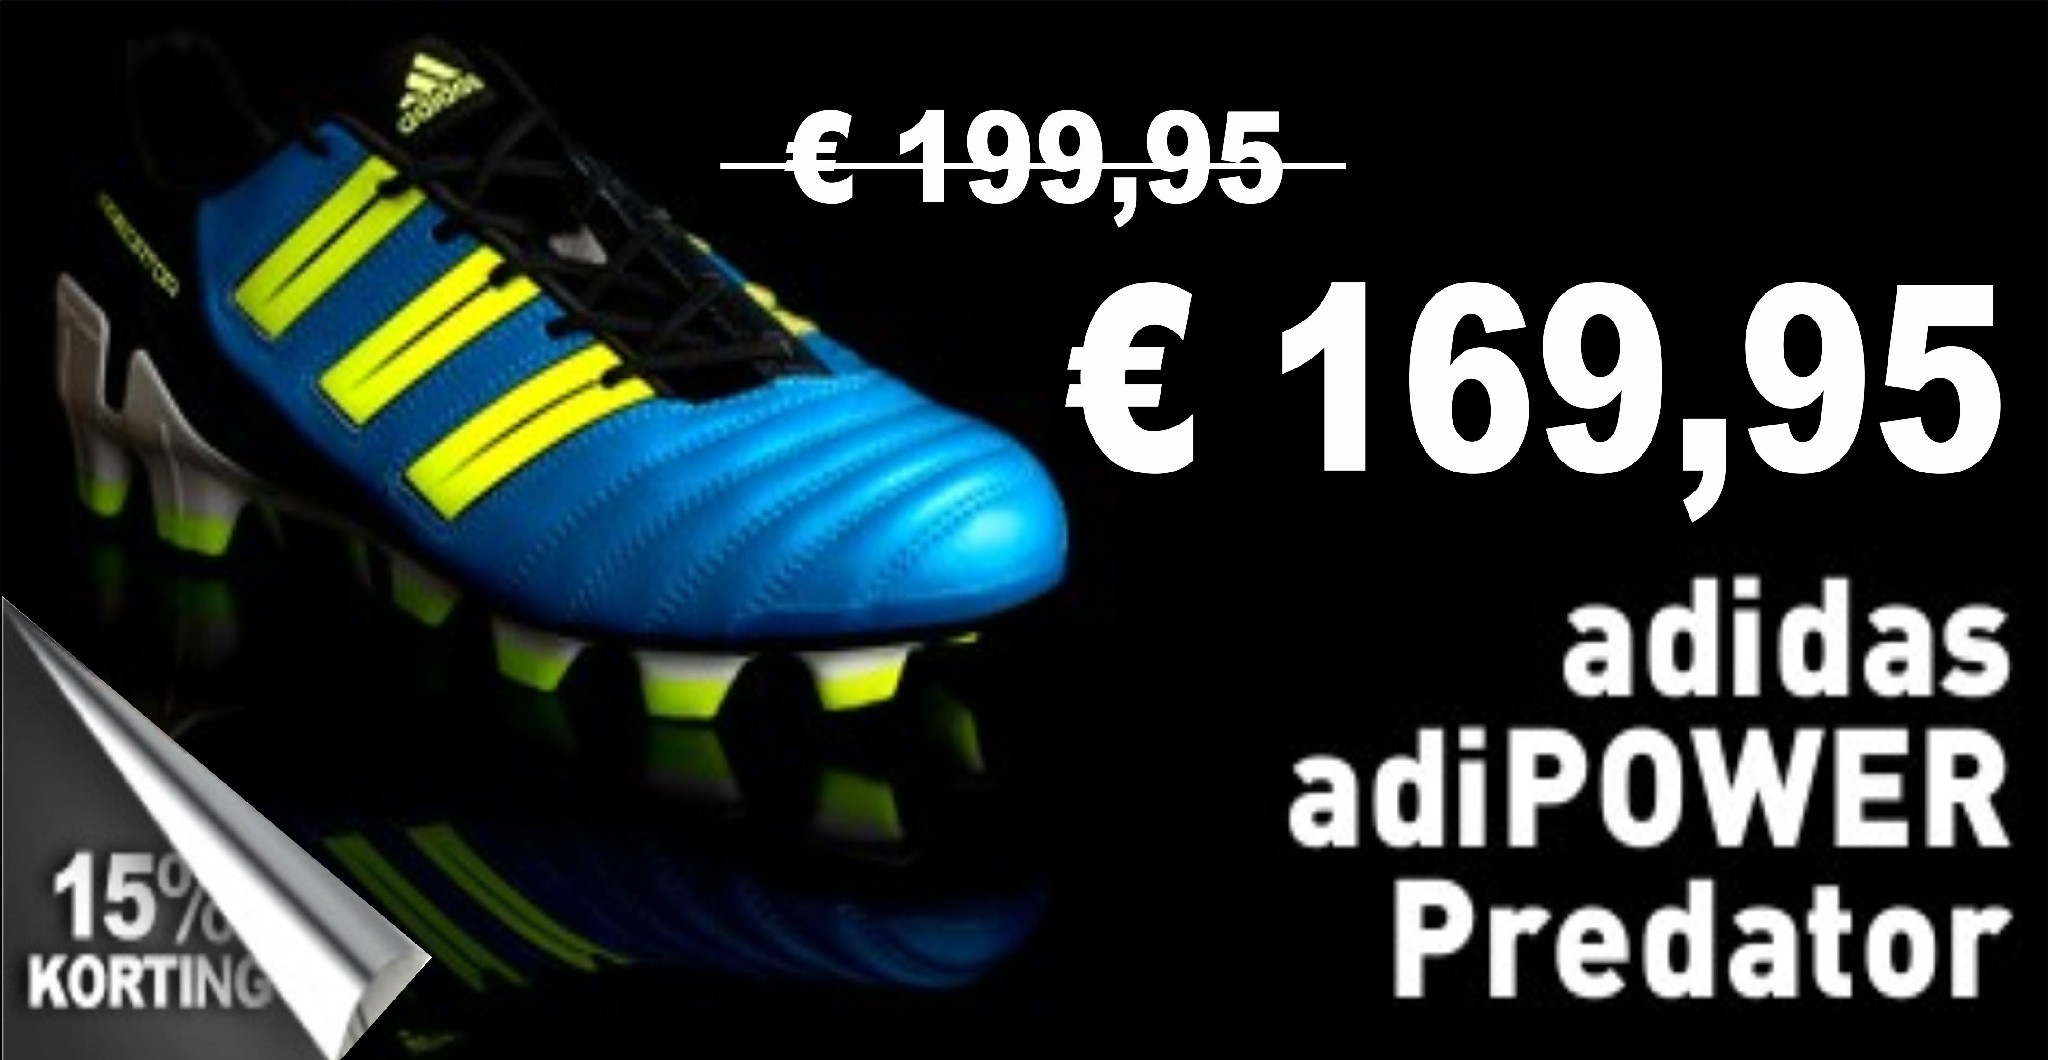 Voetbalshop Groningen (Sportmaat) on Twitter: "Adidas Predator Adipower  blauw geel van € 199,95 Voor € 169,95 kijk voor de hele Adidas collectie op  www.sportmaat.nl http://t.co/7qGwpehU" / Twitter